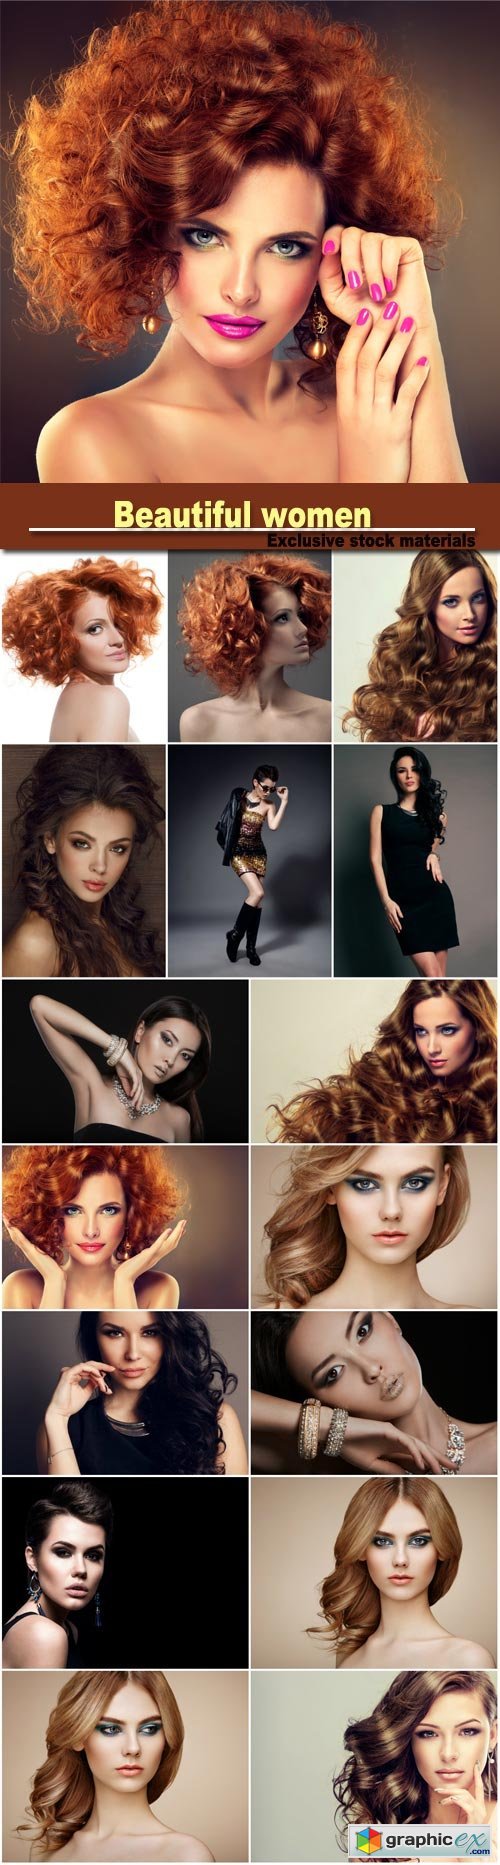 Beautiful women, hairstyles, stylish makeup